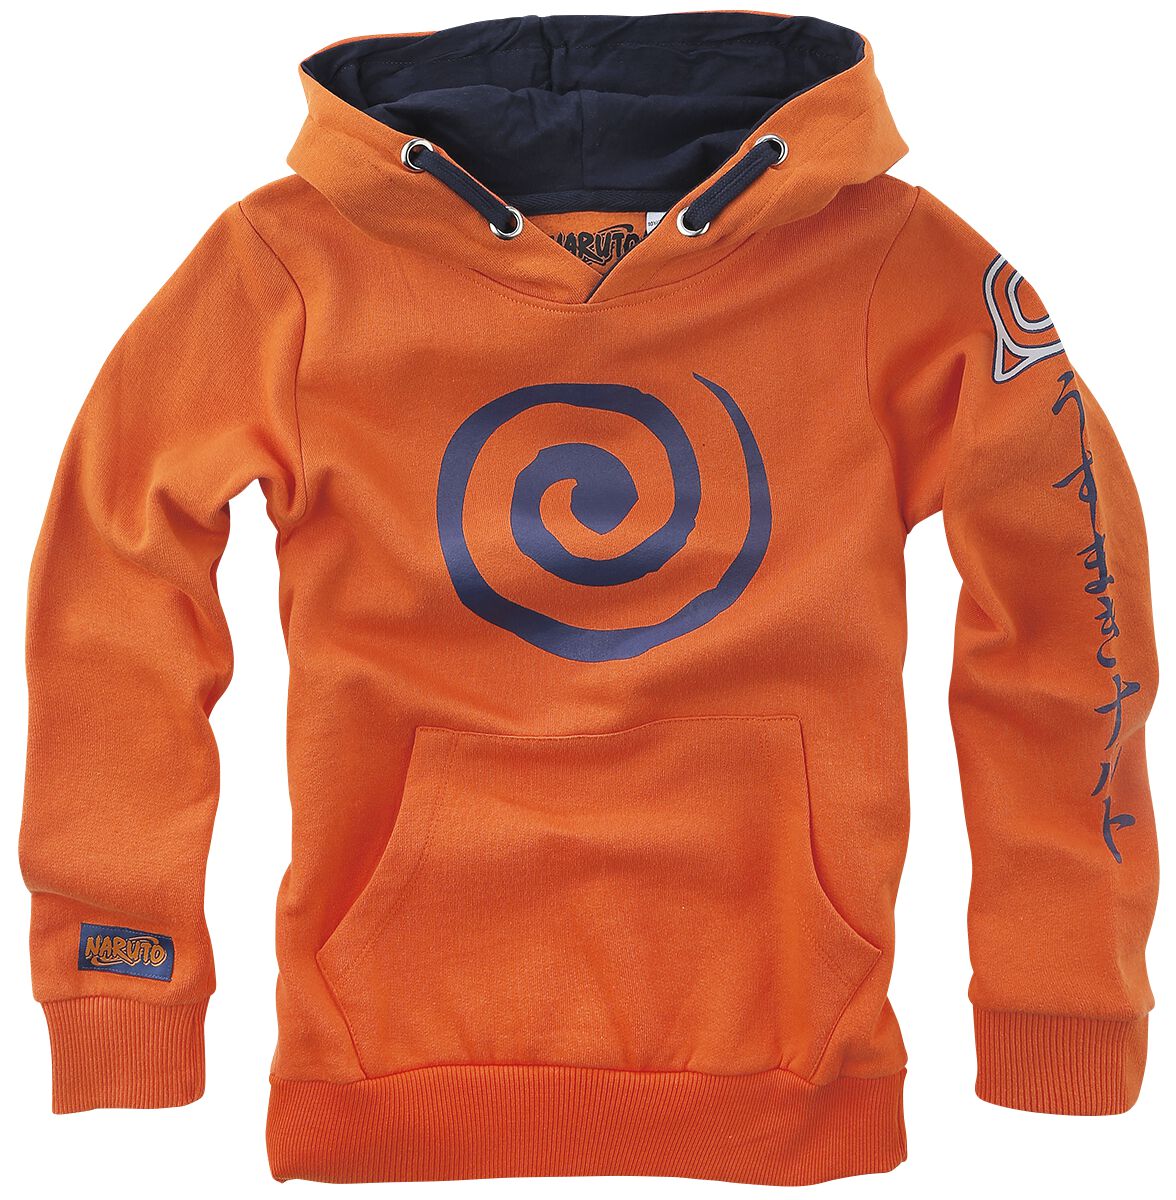 Naruto - Anime Kapuzenpullover - Kids - Sign - 116 bis 164 - Größe 128 - orange  - EMP exklusives Merchandise! von Naruto